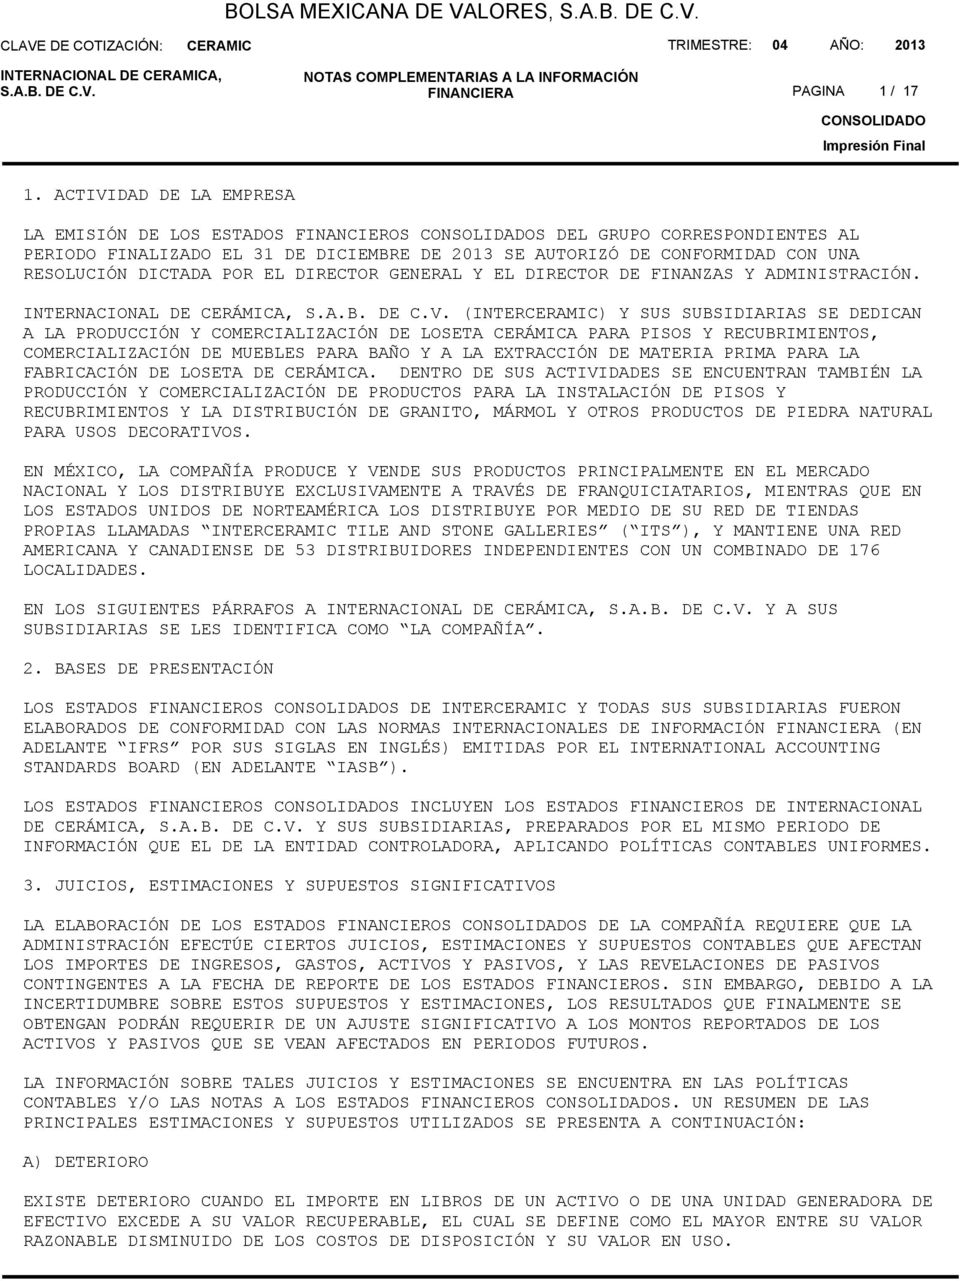 DIRECTOR GENERAL Y EL DIRECTOR DE FINANZAS Y ADMINISTRACIÓN. INTERNACIONAL DE CERÁMICA, S.A.B. DE C.V.